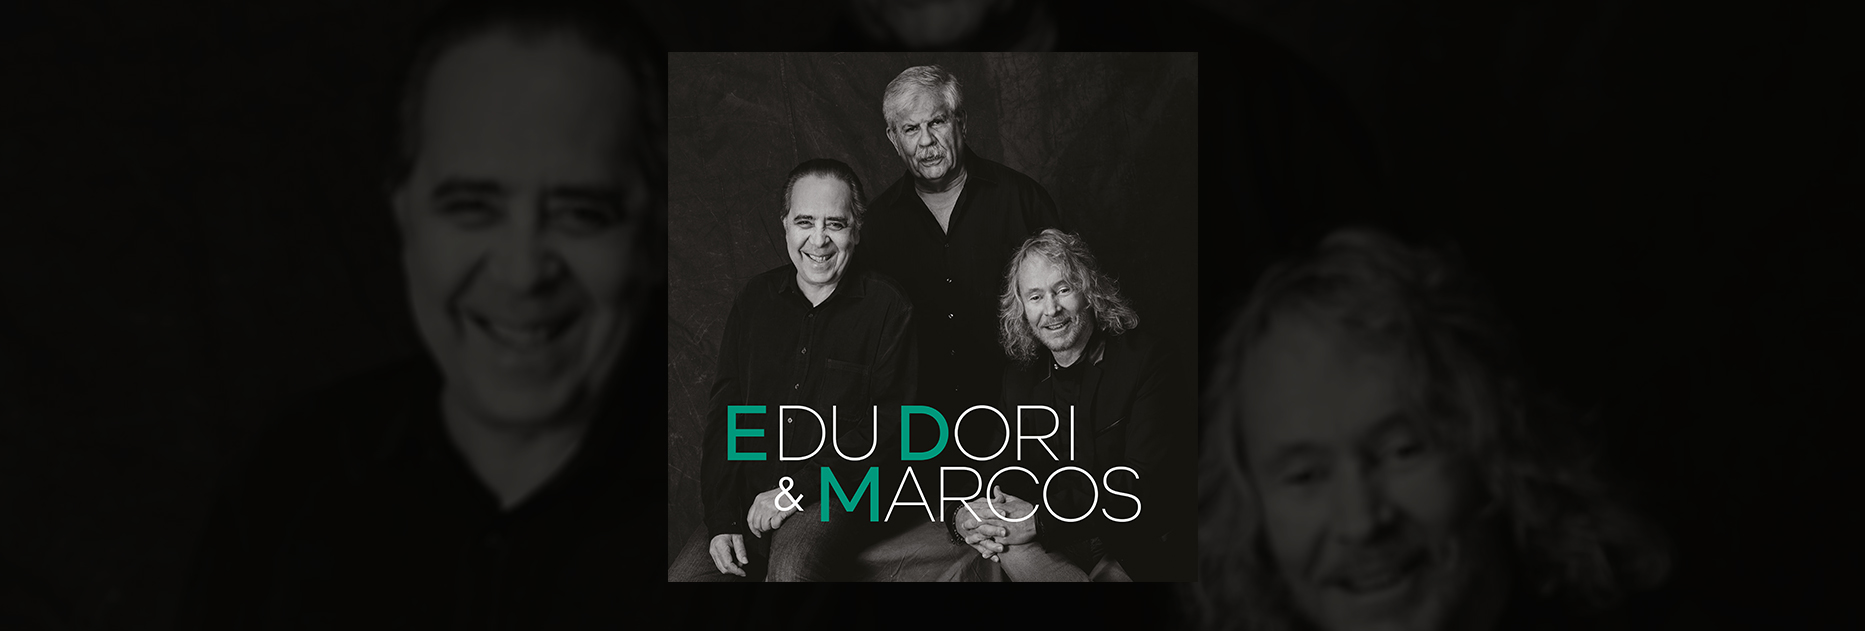 Edu, Dori & Marcos, a estréia em disco do trio 55 anos depois